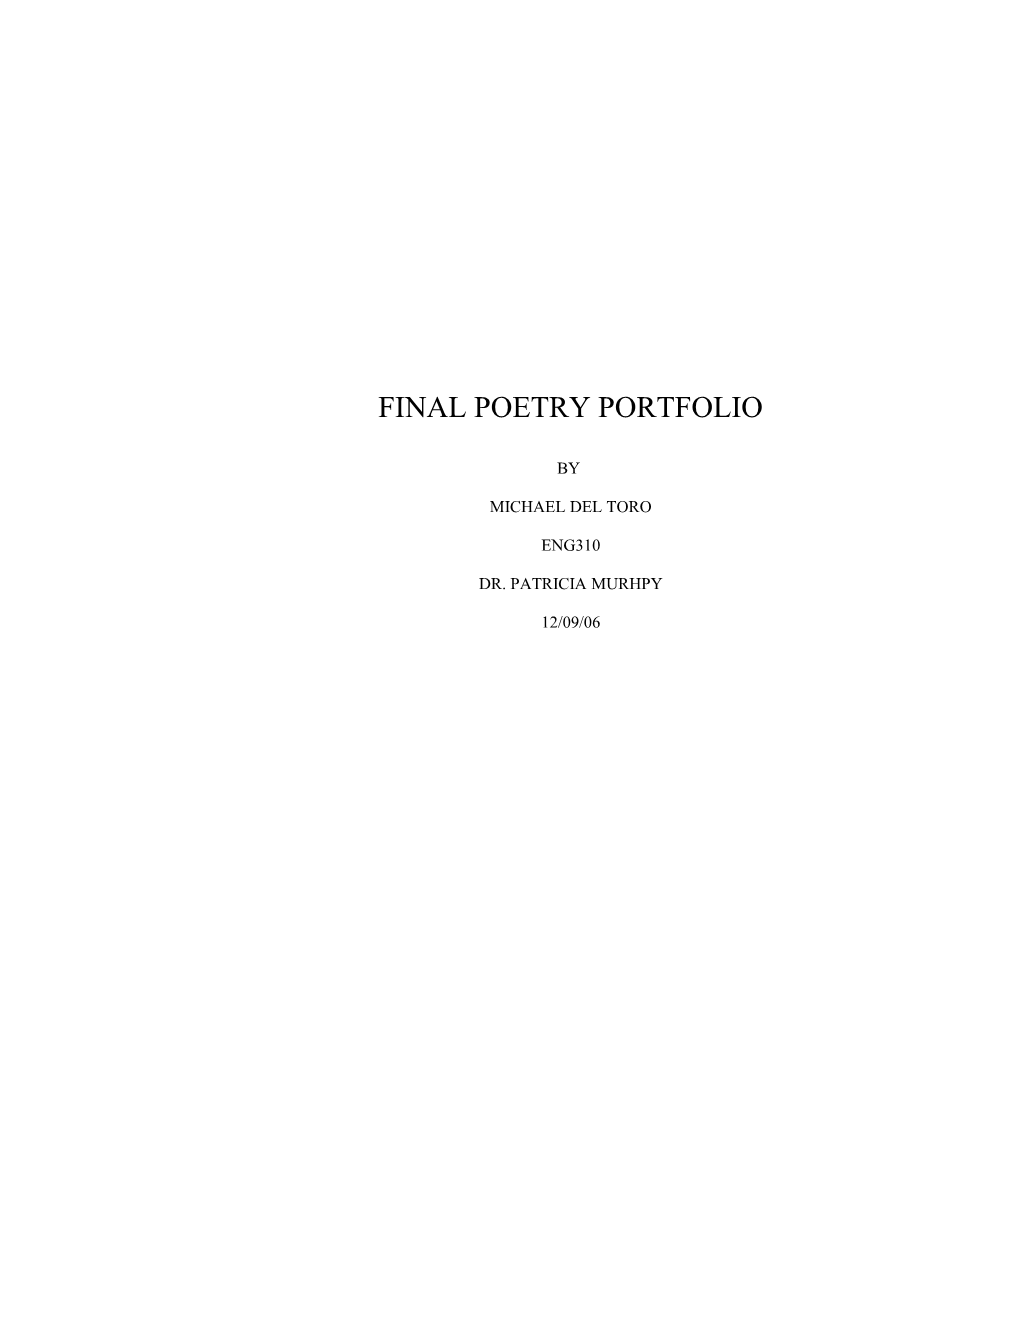 Final Poetry Portfolio